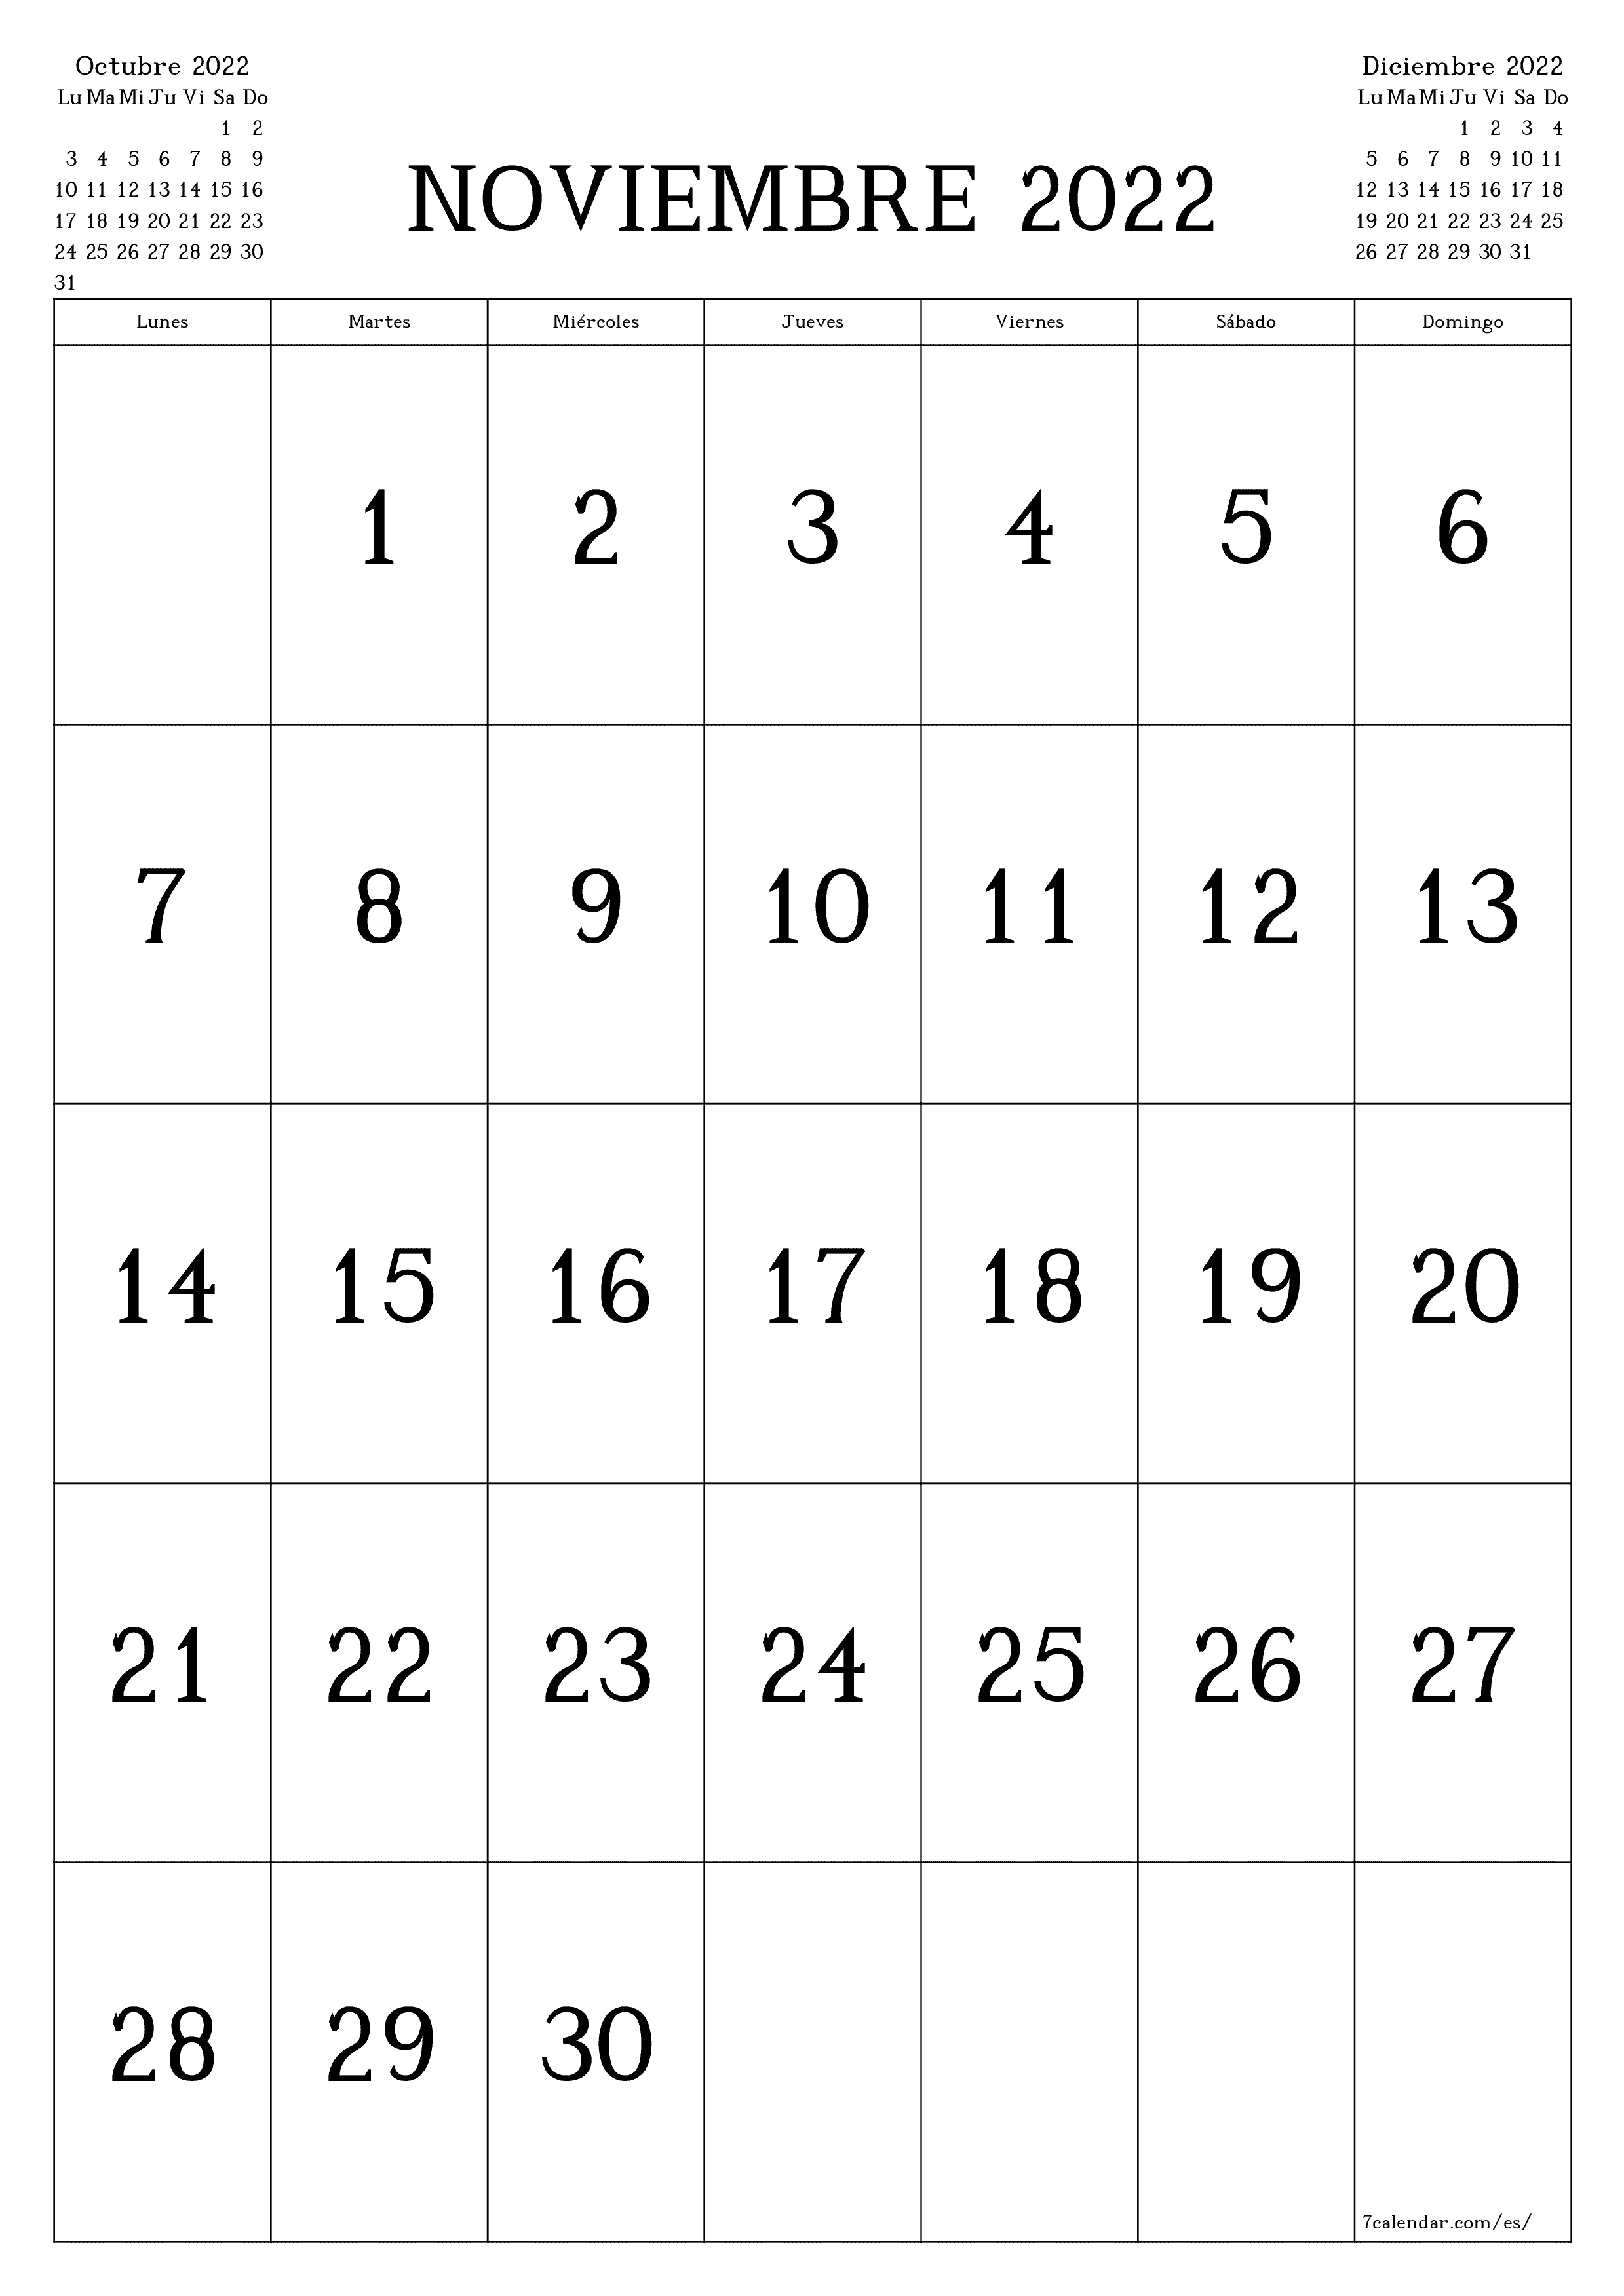 Calendario mensual en blanco para el mes Noviembre 2022 guardar e imprimir en PDF PNG Spanish - 7calendar.com